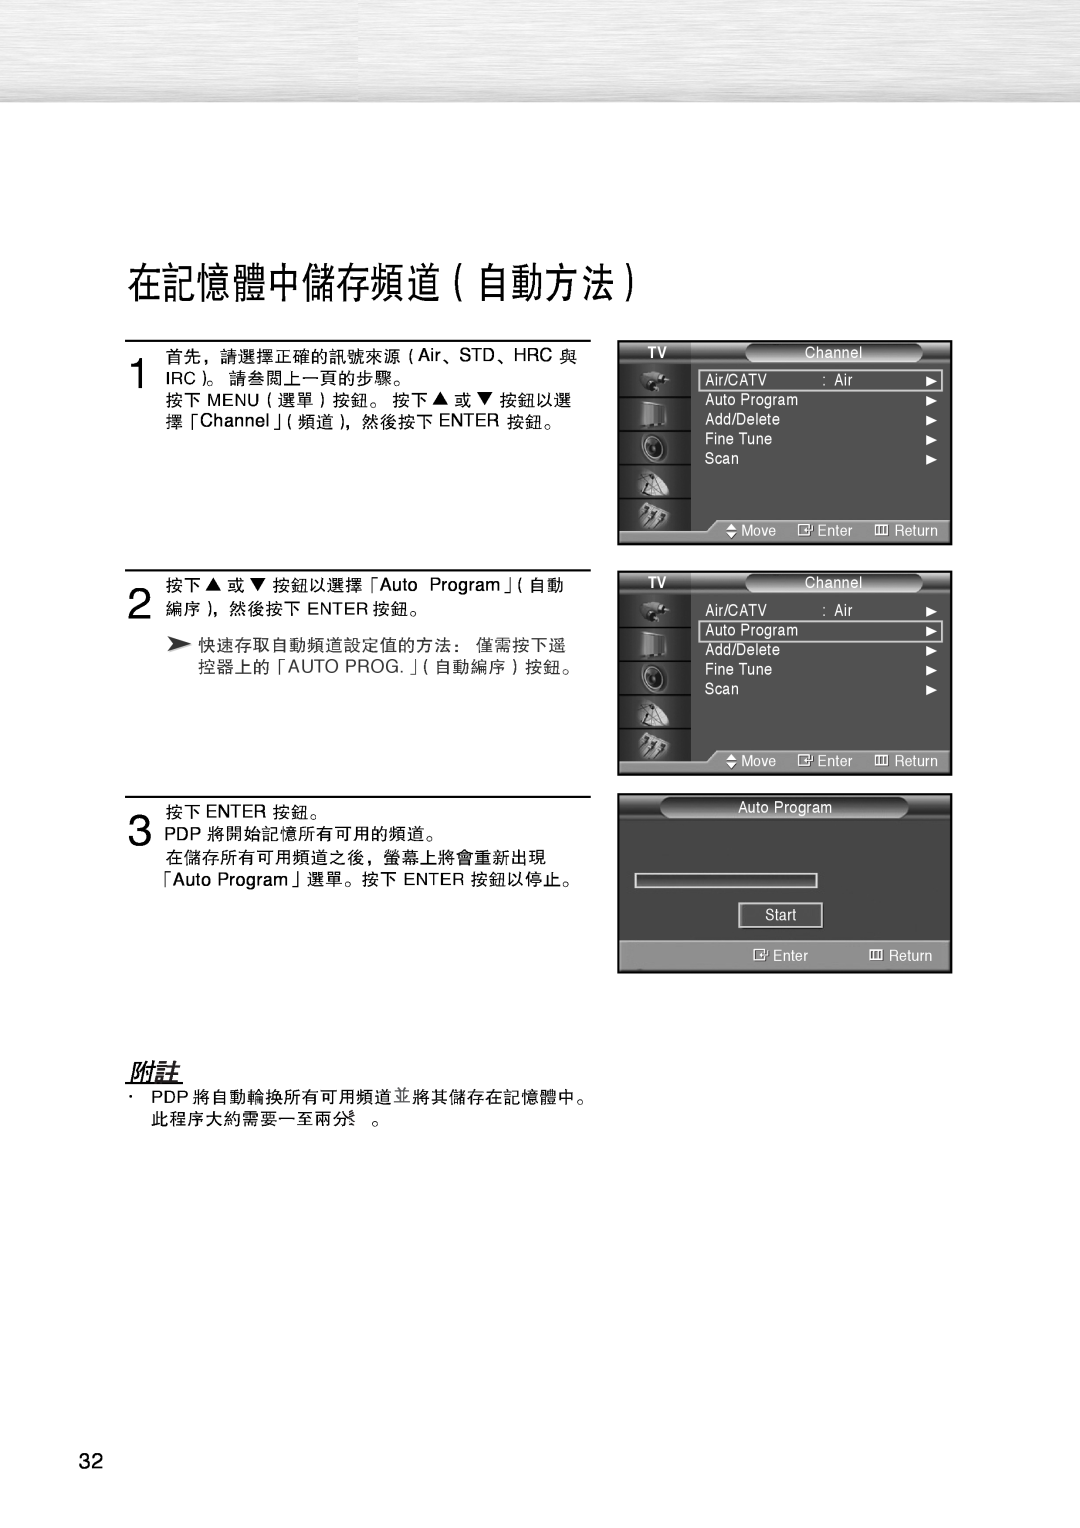 Samsung PL-42D4S manual AirSTDHRC, Channel ENTER Auto Program, ENTER PDP Auto Program 